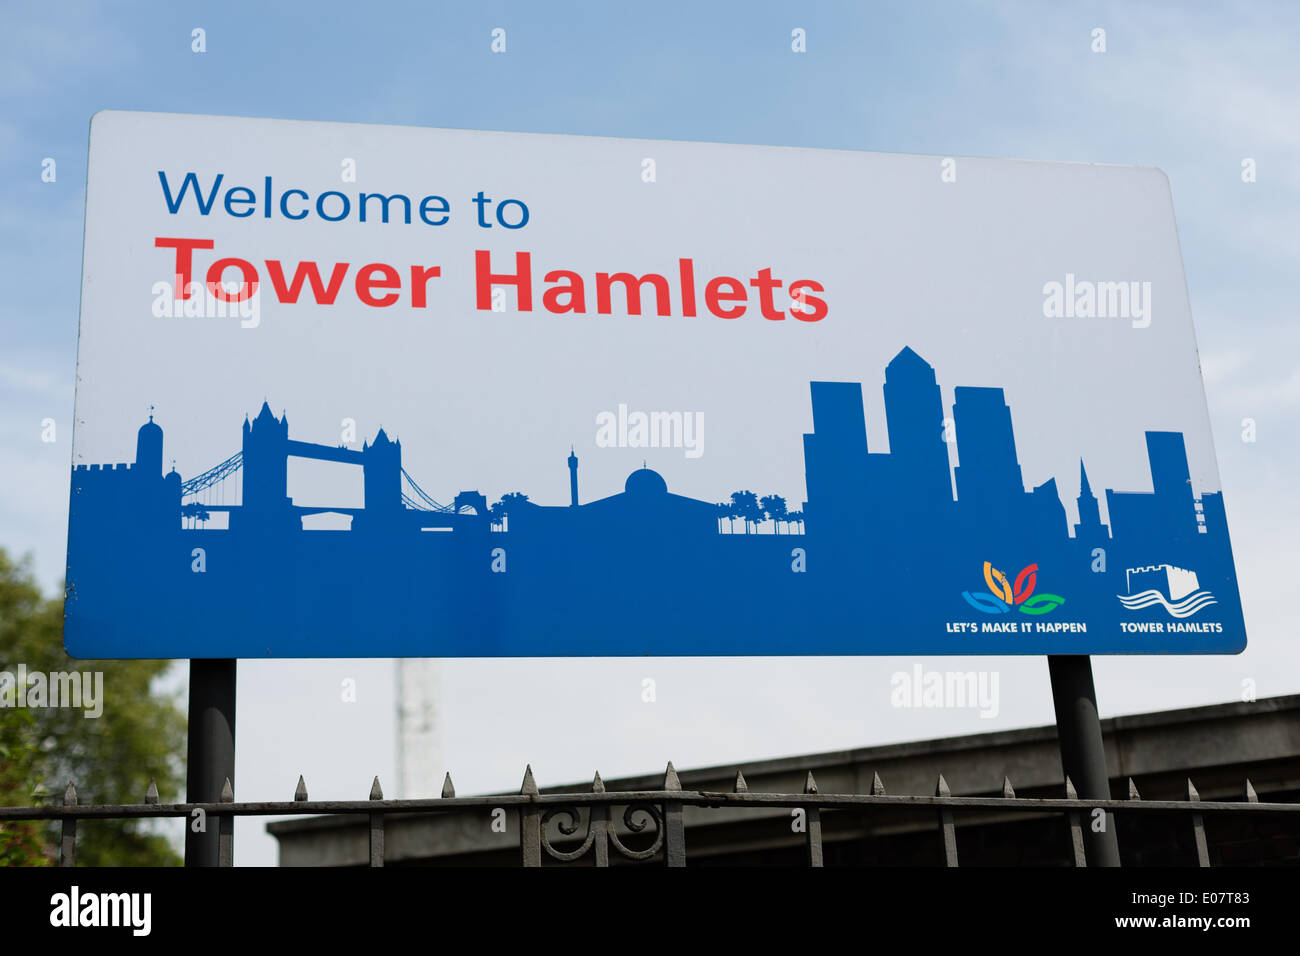 London, UK 5. Mai 2014. Tower Hamlets Zeichen markiert die Grenze des London Borough of Tower Hamlets neben der City of London. Es wurde vor kurzem angekündigt, dass britische Wahllokale in 16 "hohem Risiko" Bereichen wie Tower Hamlets in London während der Mai Kommunalwahlen Polizeistreife wird die von der Wahlkommission als anfällig für Missbrauch festgestellt wurden. Stockfoto